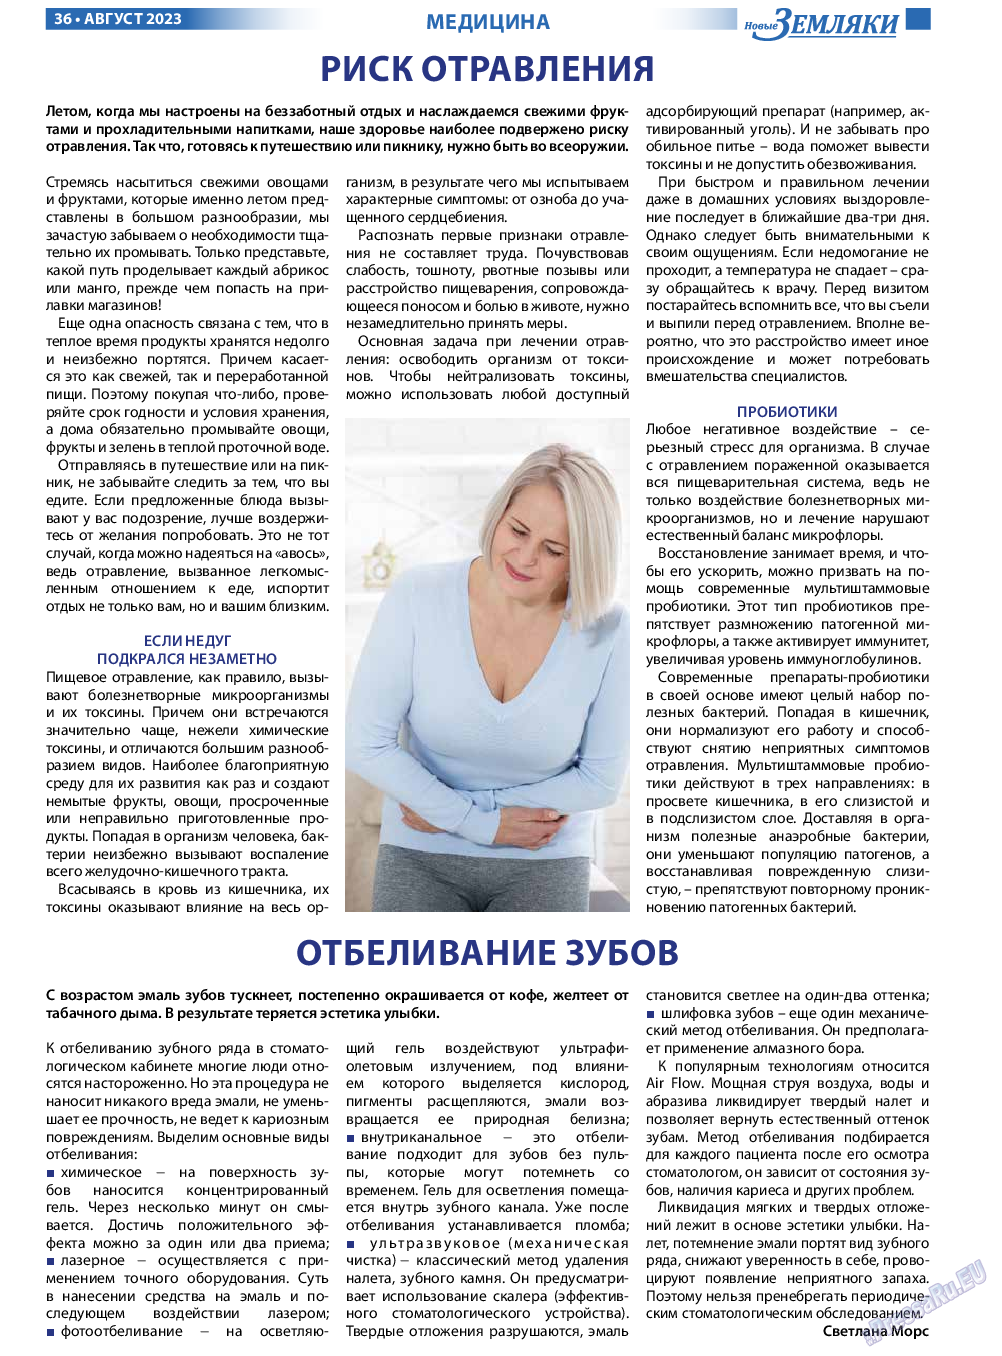 Новые Земляки, газета. 2023 №8 стр.36